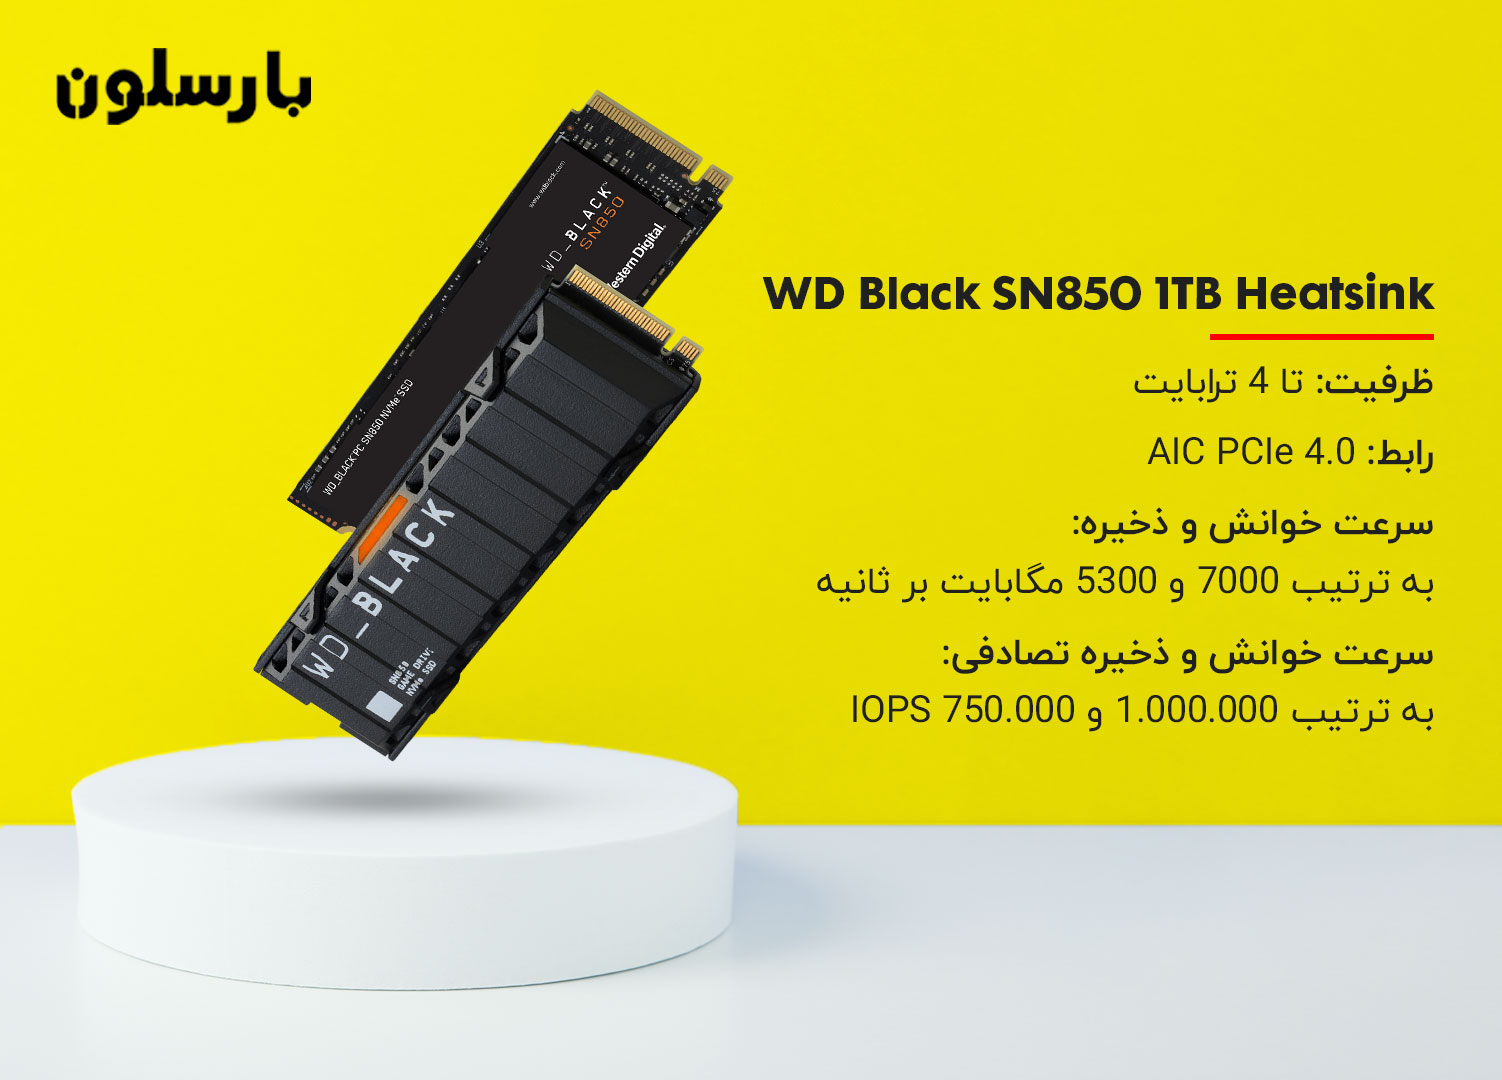 هارد مناسب برای نصب روی کنسول WD Black SN850 1TB Heatsink